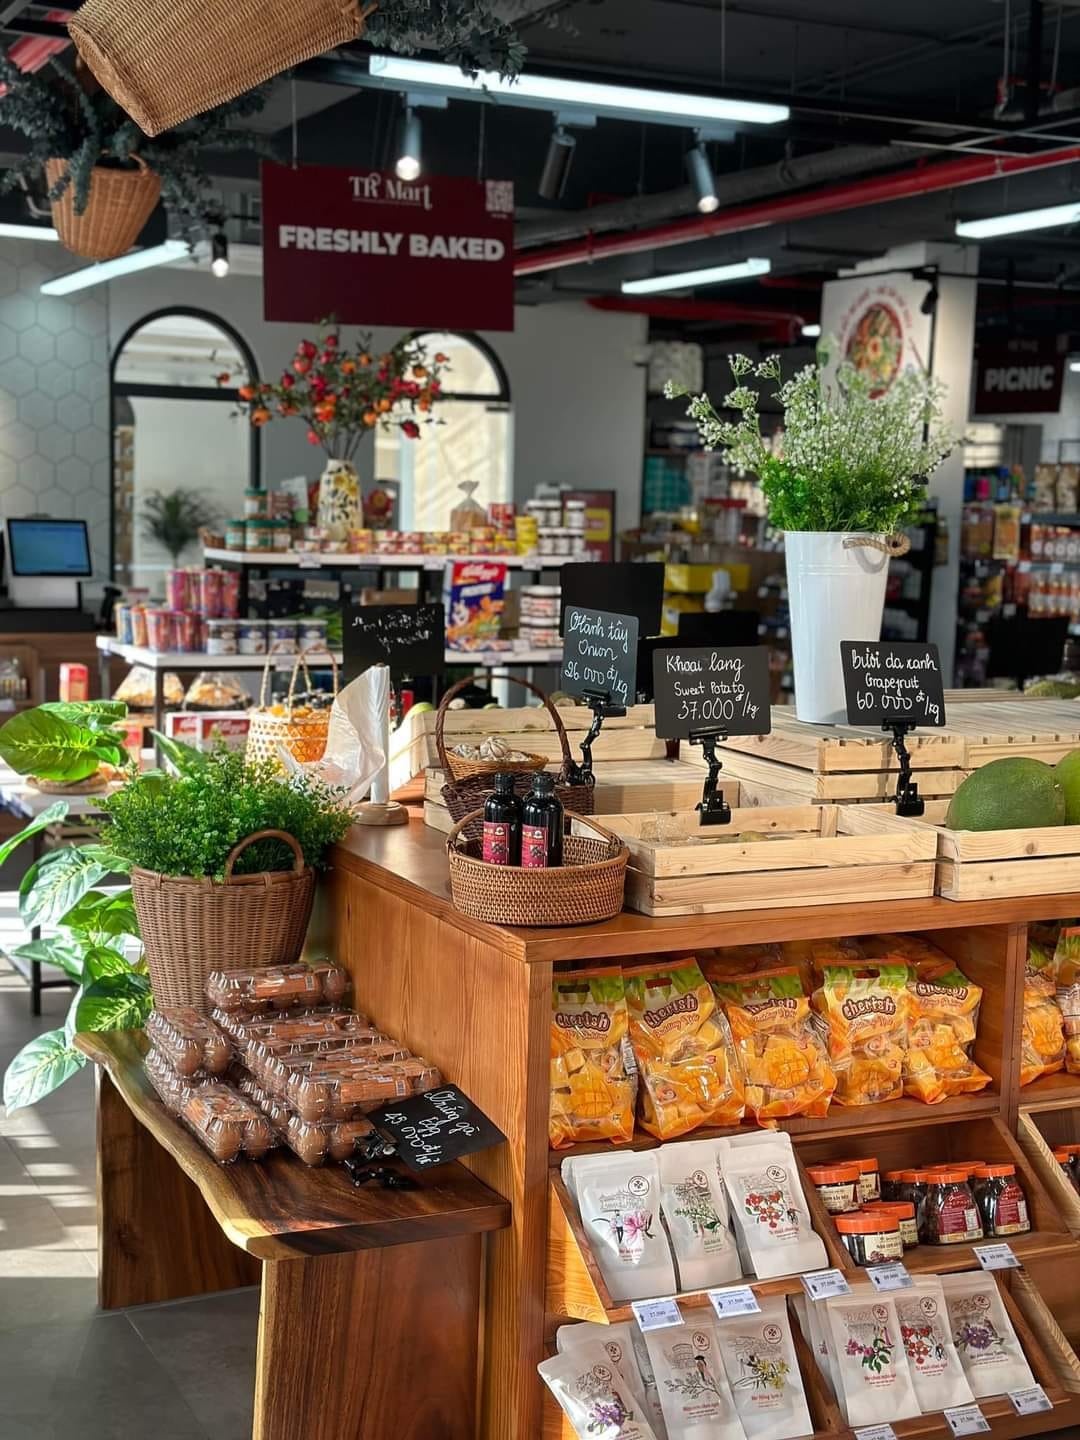 TR Mart - sự kết hợp giữa mô hình siêu thị tiện lợi và quán cafe